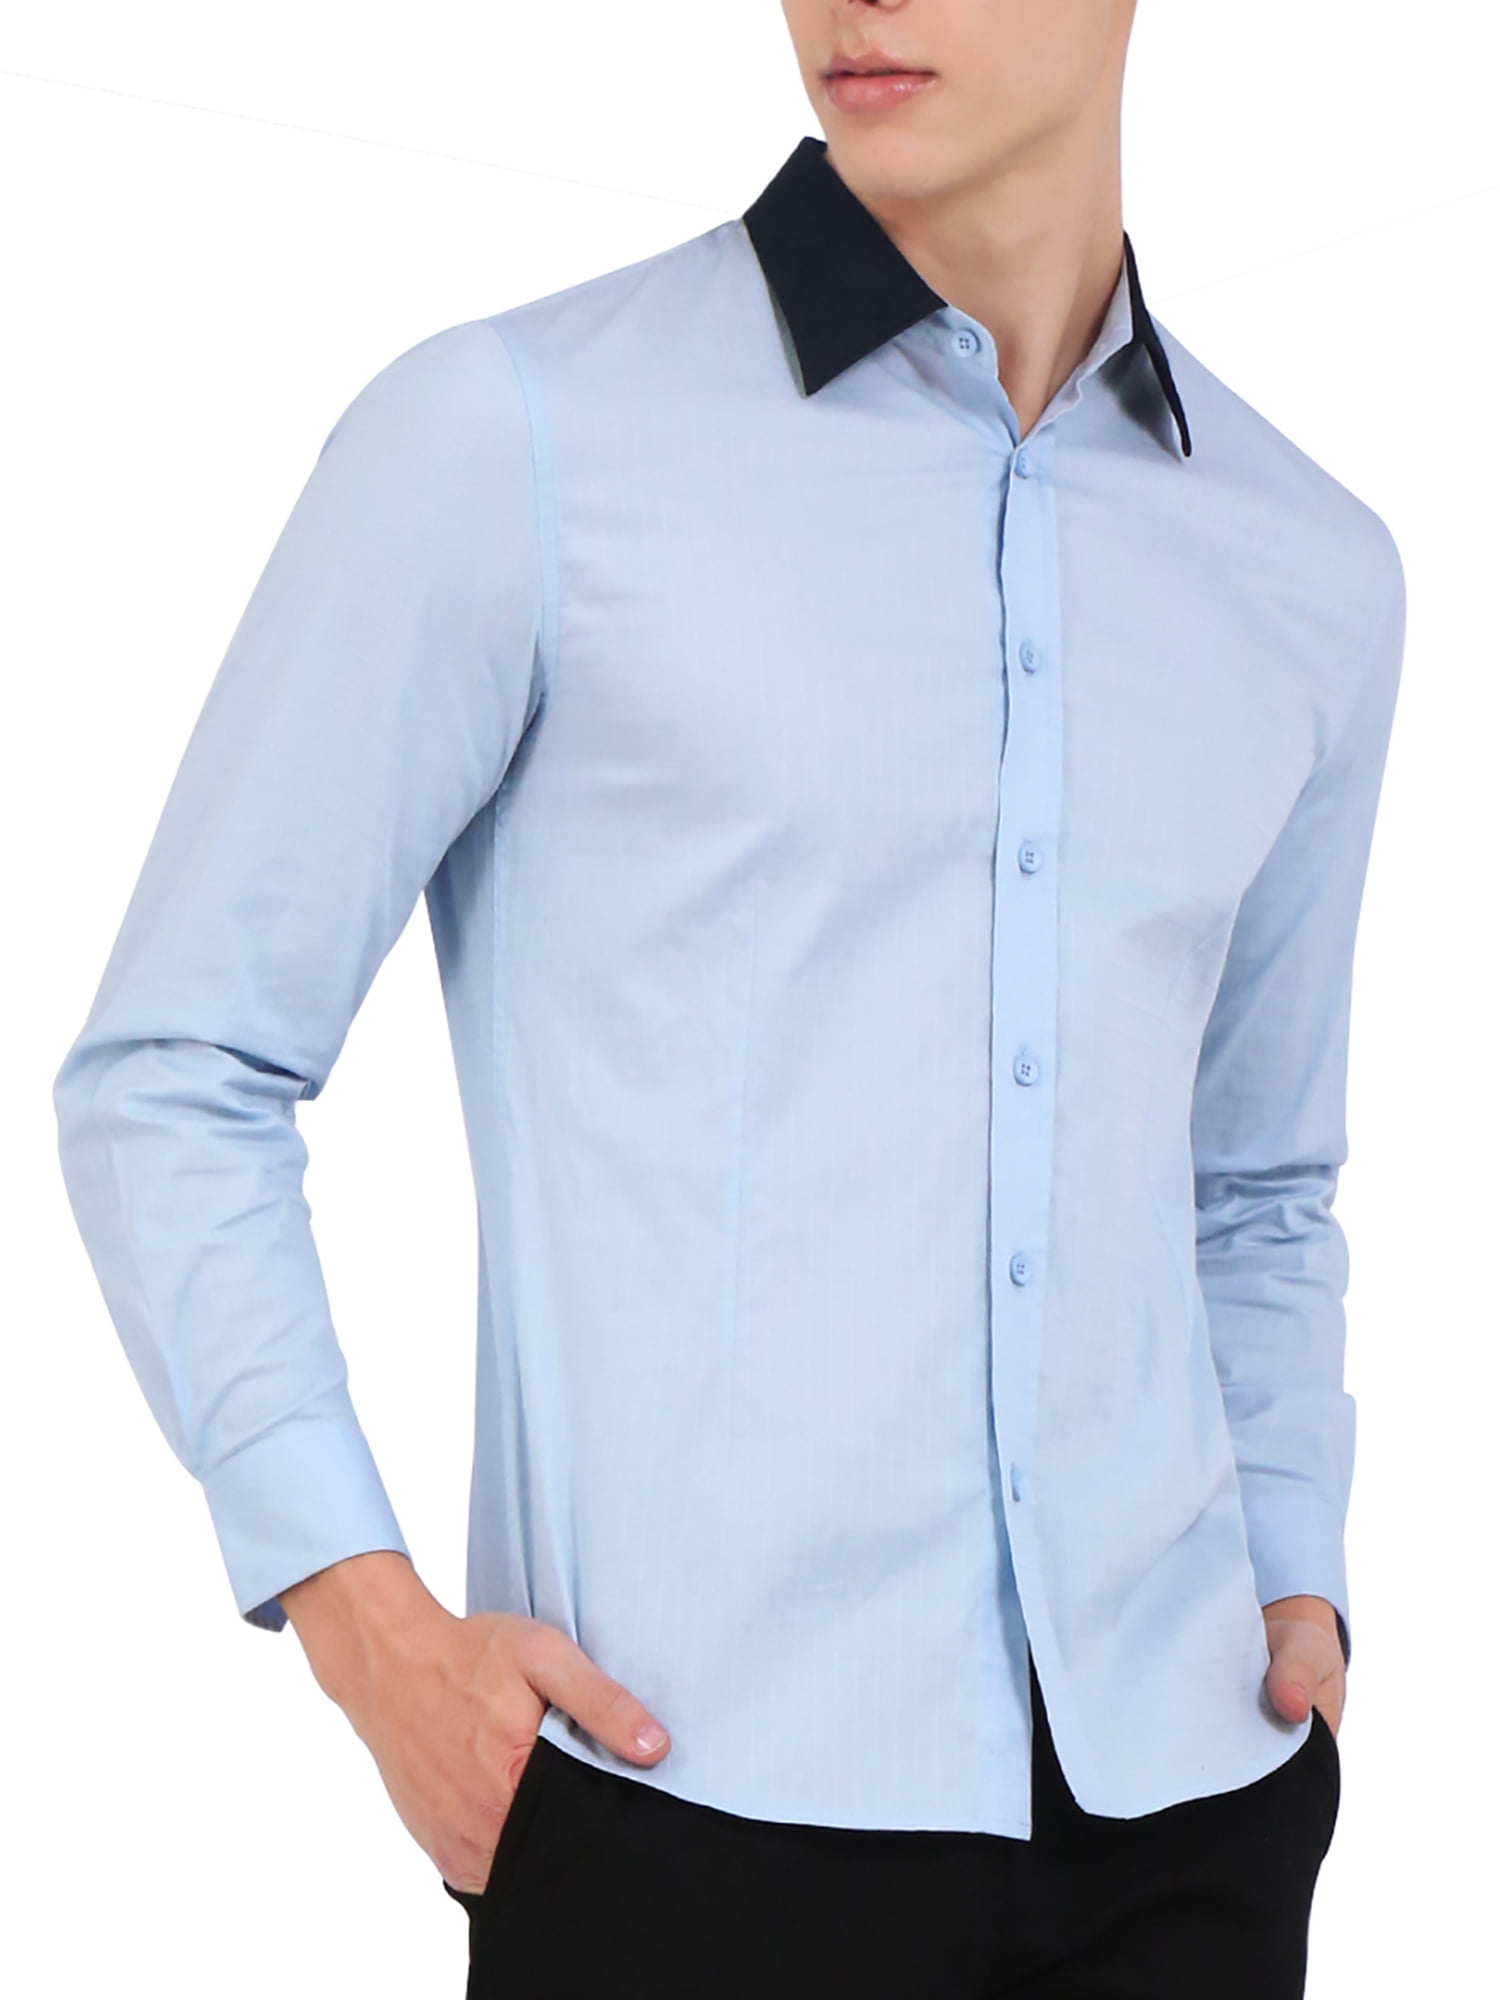 Men Contrast Dress Plaid Long Sleeve Button Down Shirt Light Blue ...